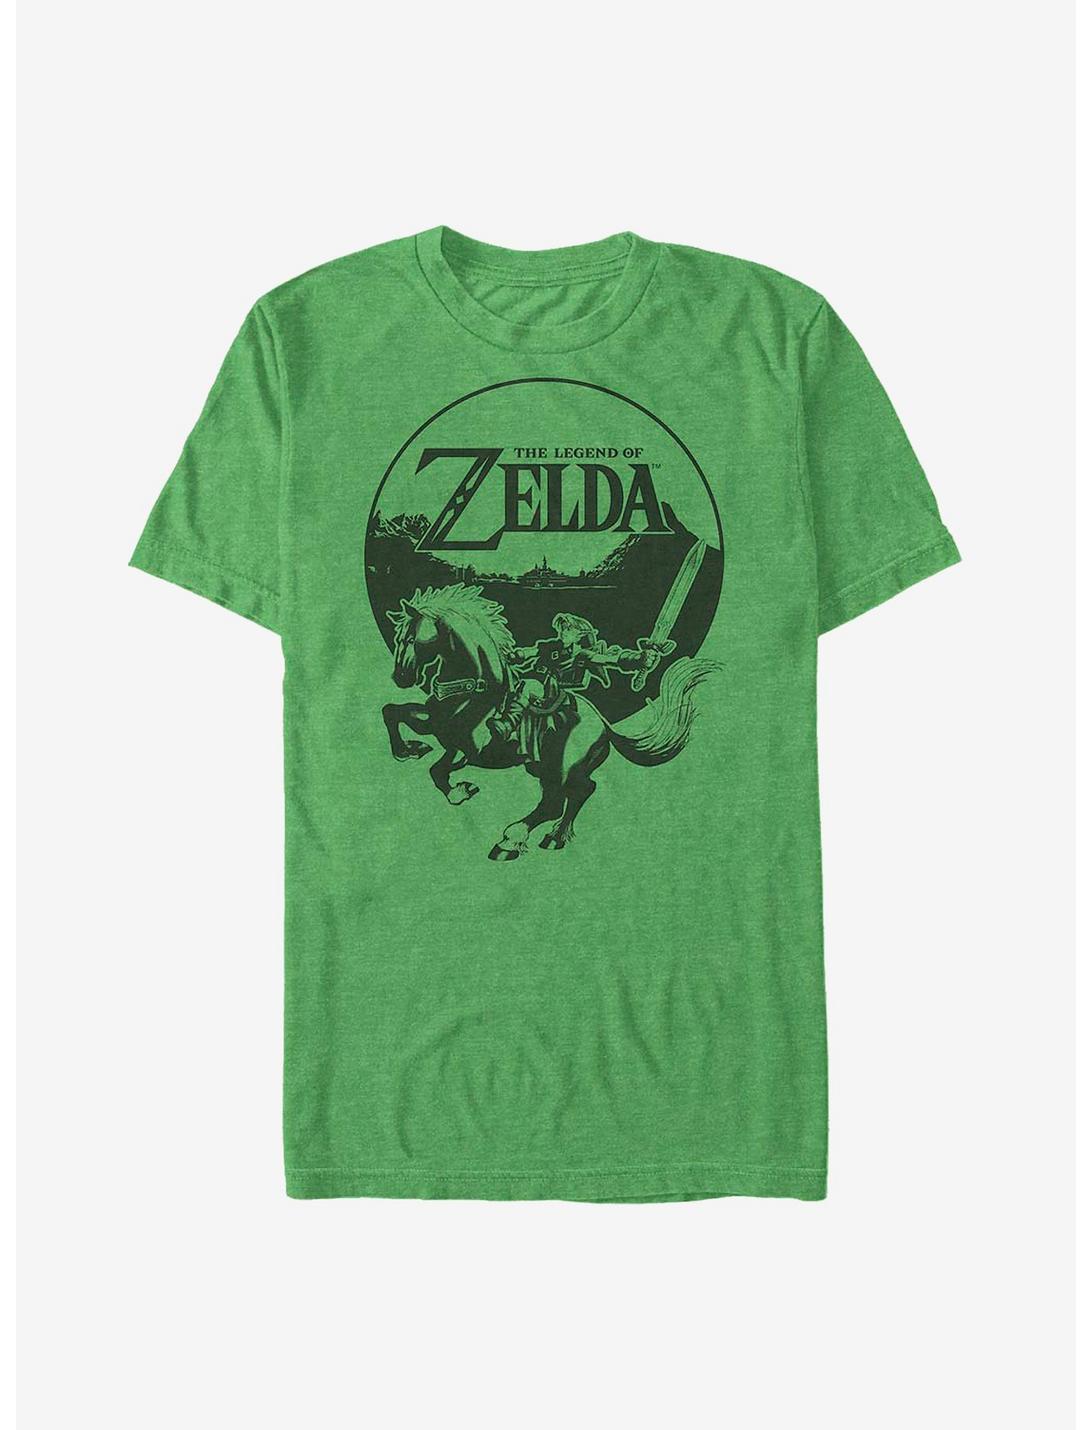 Plus Size Nintendo Zelda Vintage Fighter T-Shirt, , hi-res